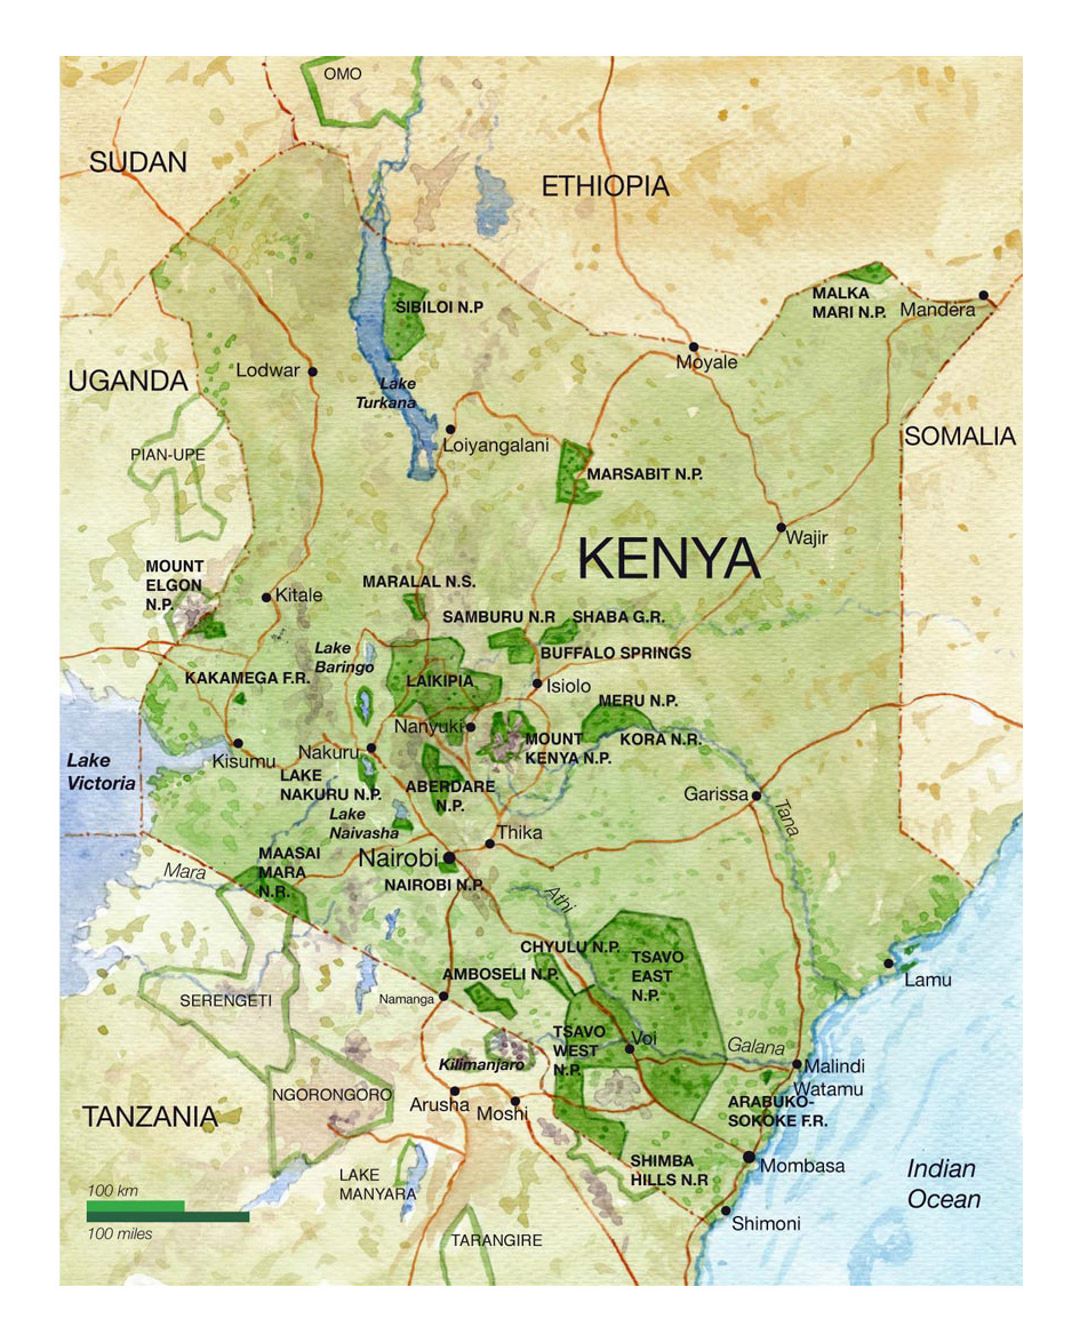 Detailed national parks map of Kenya